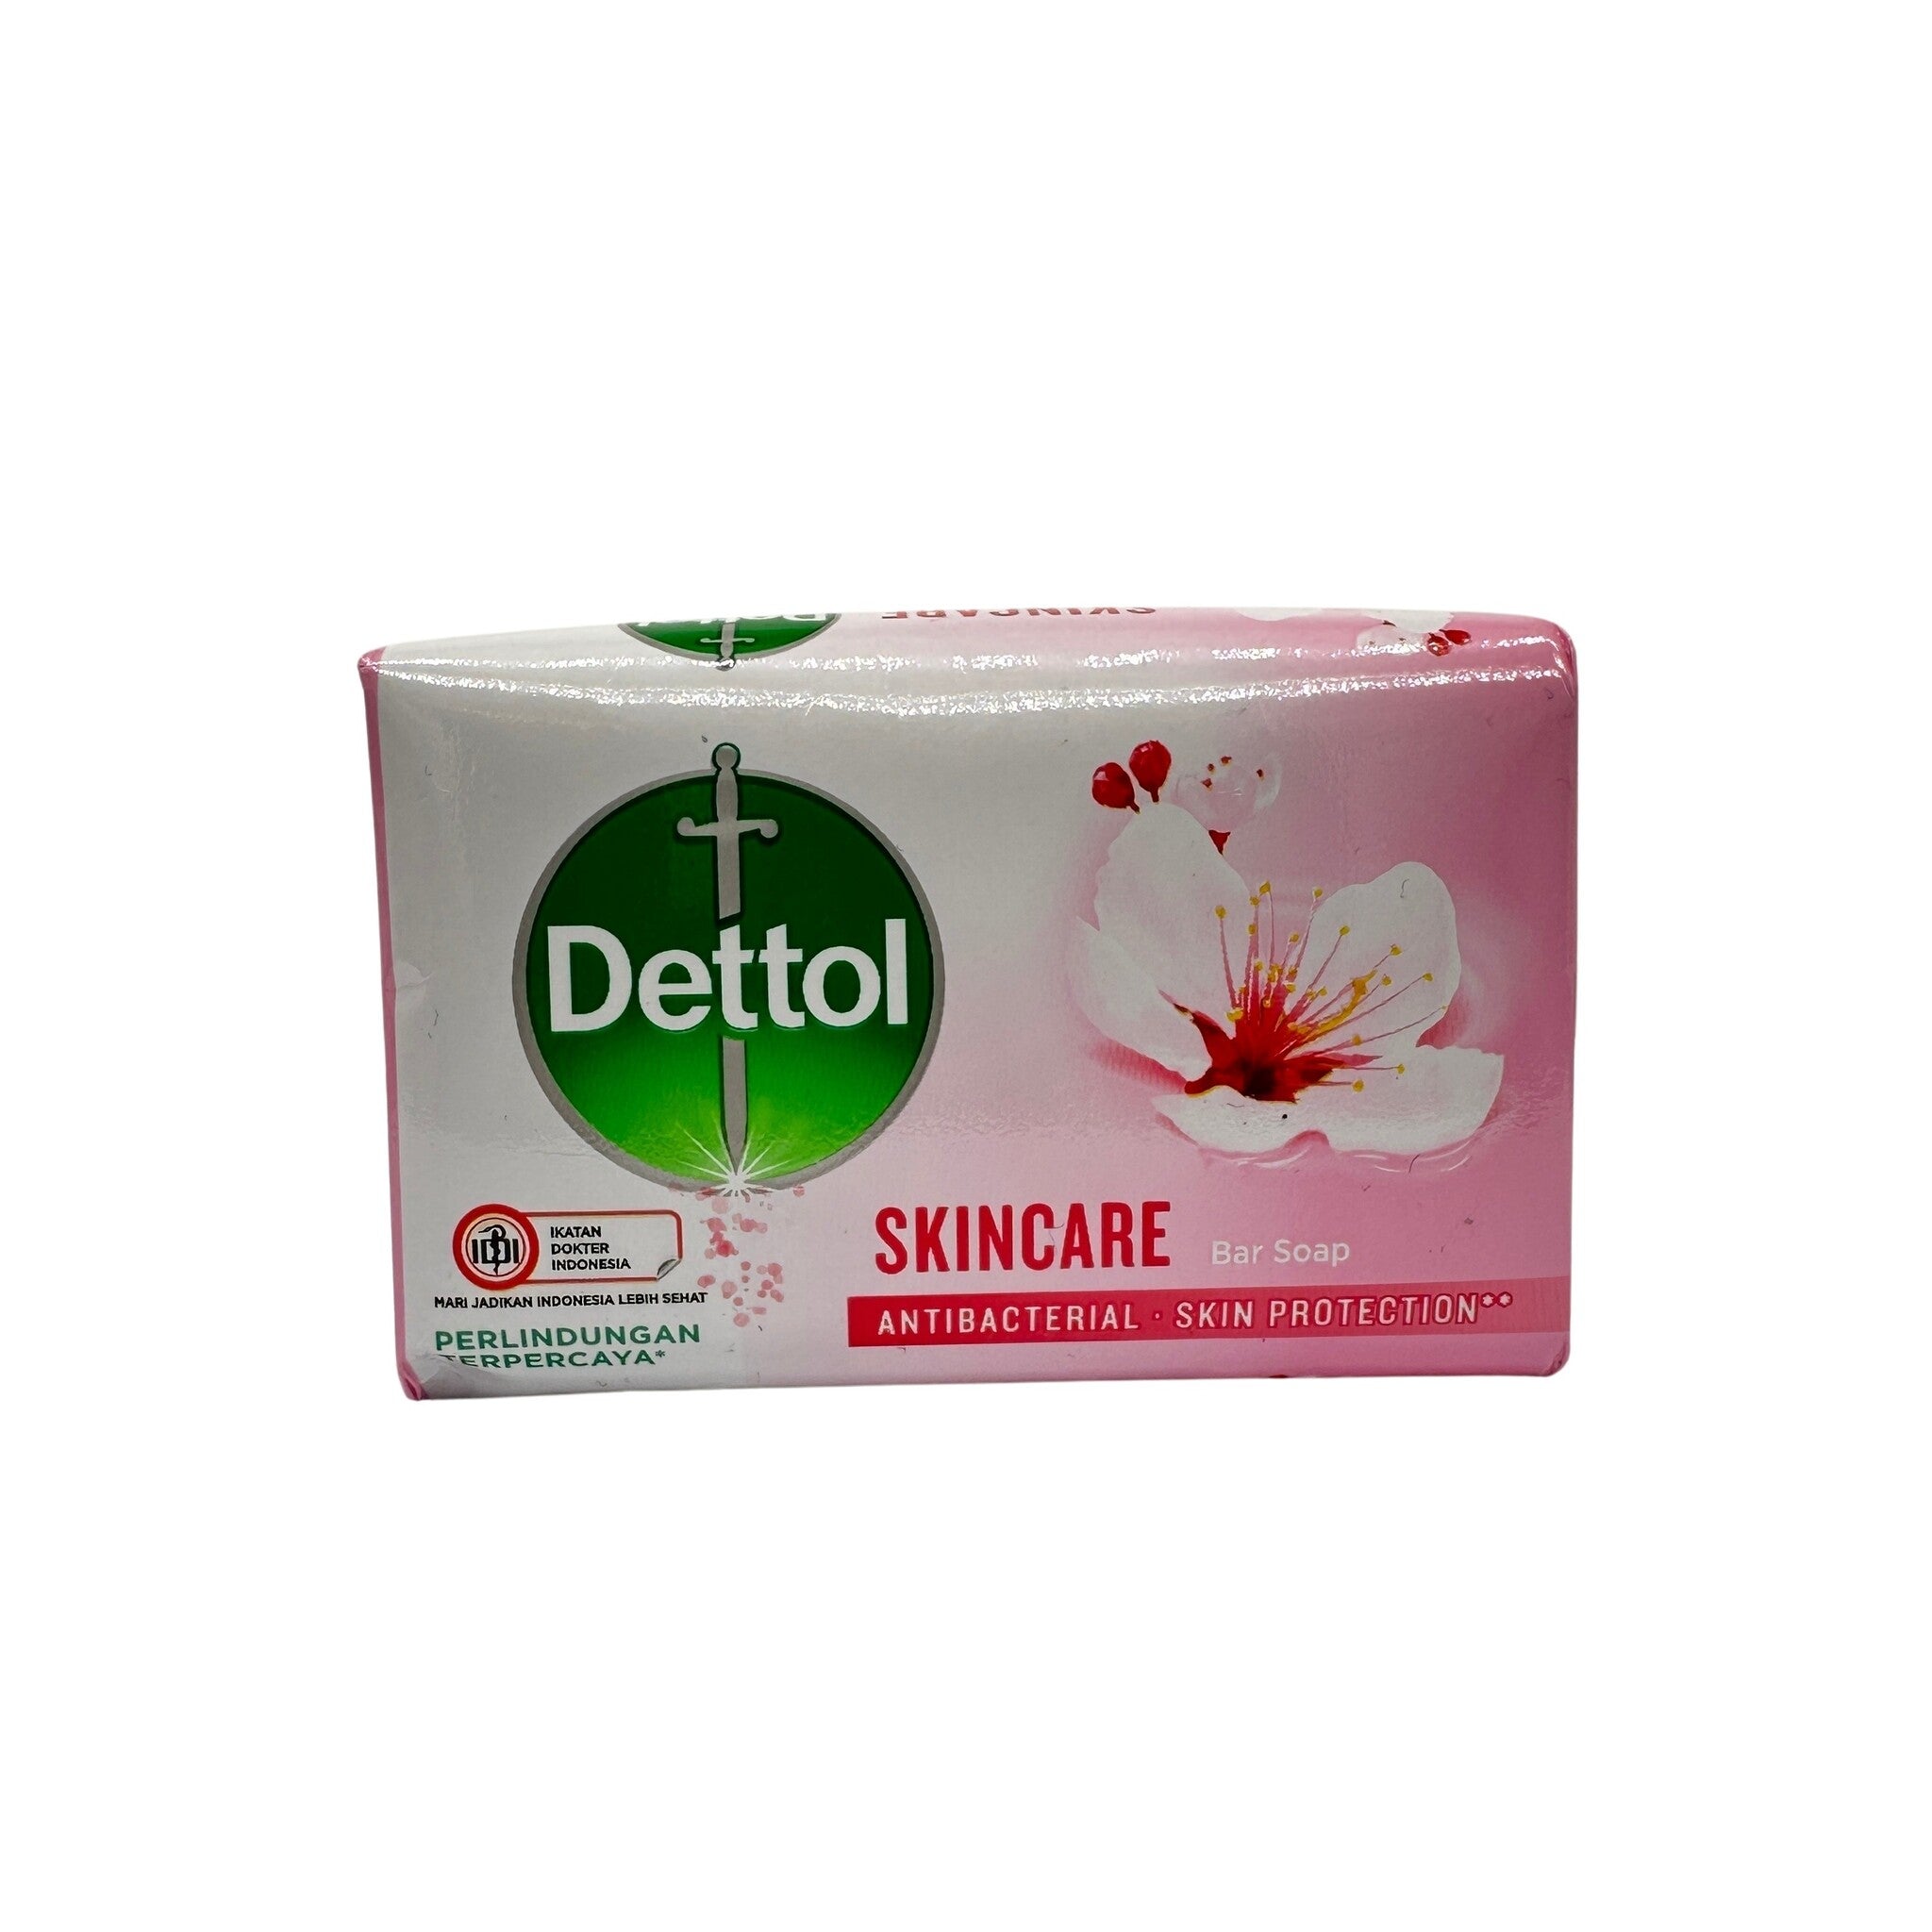 Dettol Skincare antibacterial skin protection bar 100gr